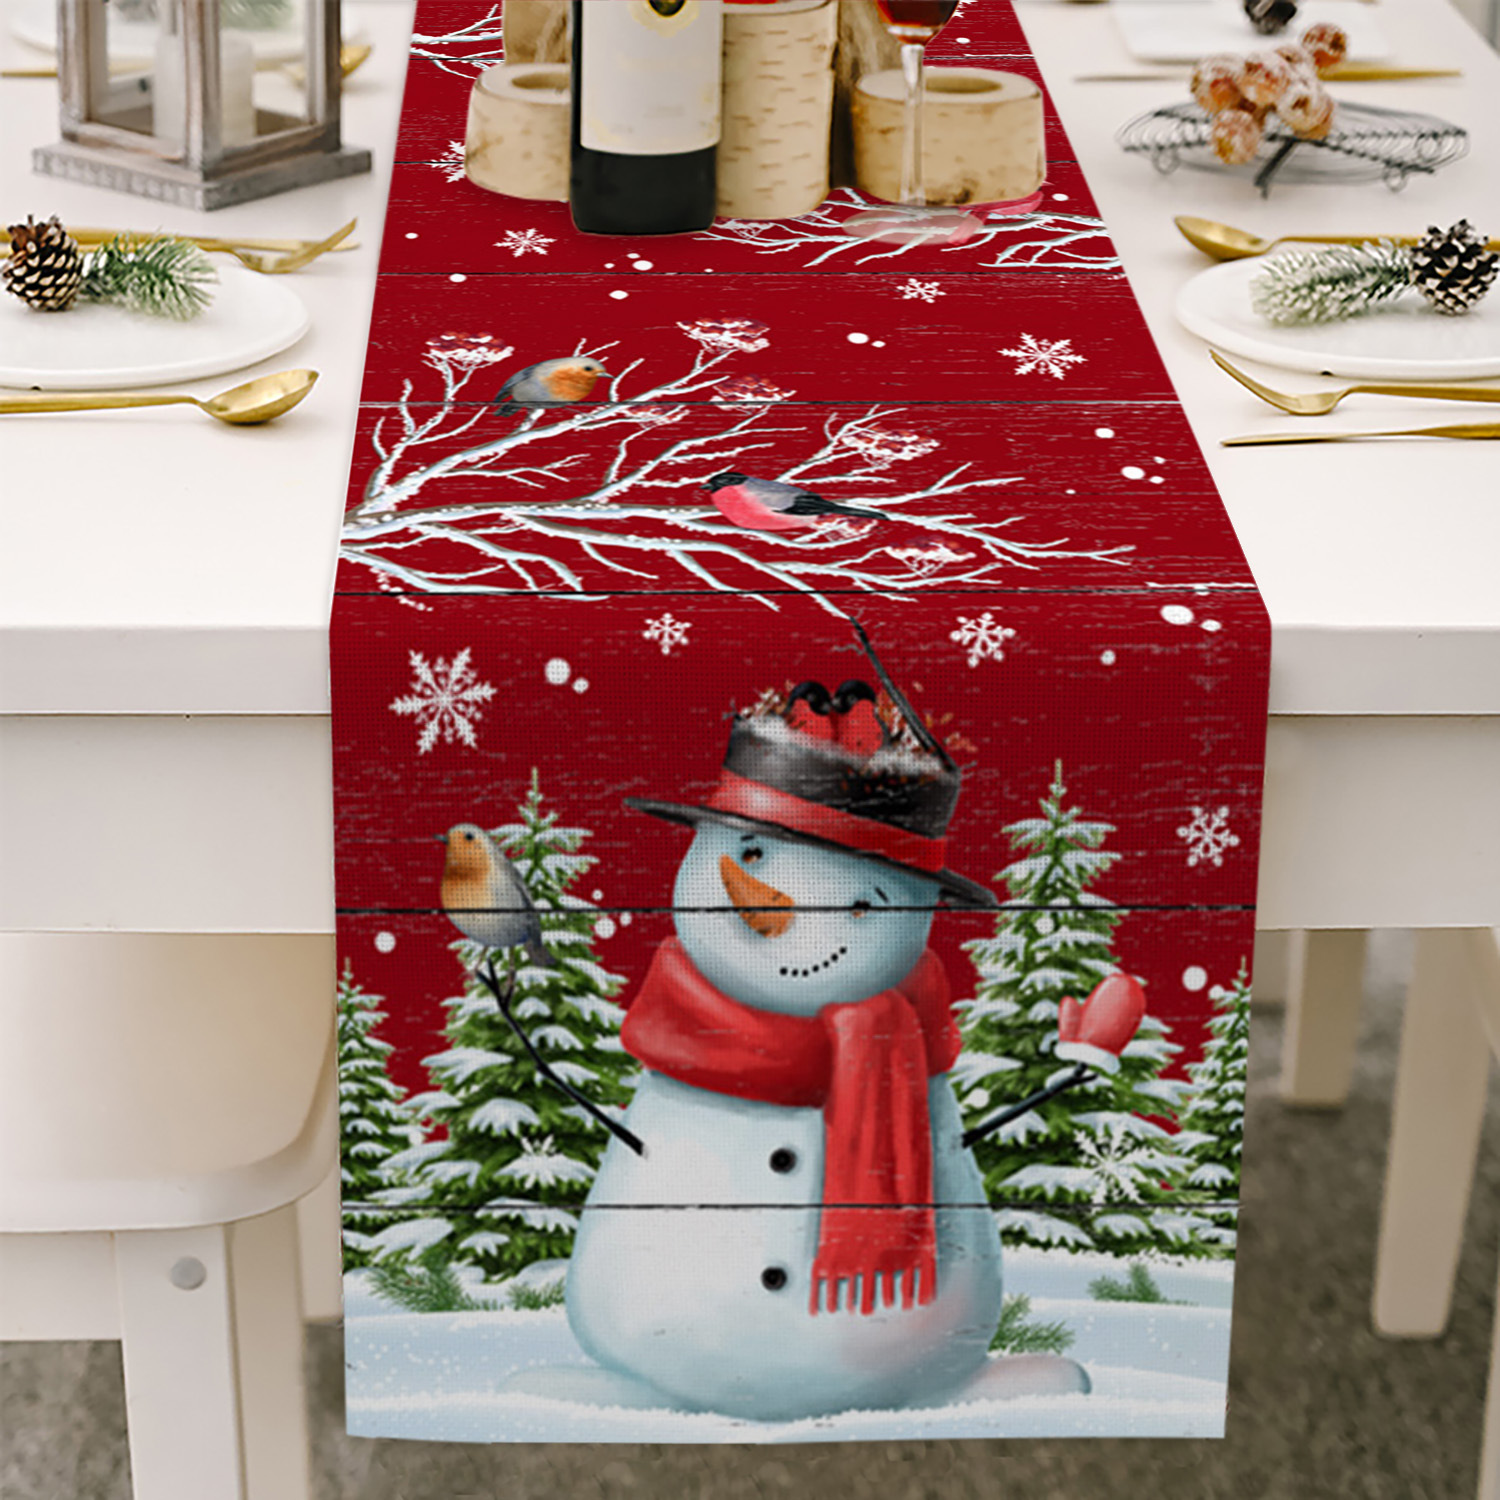 创意款红色雪人桌巾圣诞节桌旗美式轻奢婚礼派对餐桌装饰防水桌布